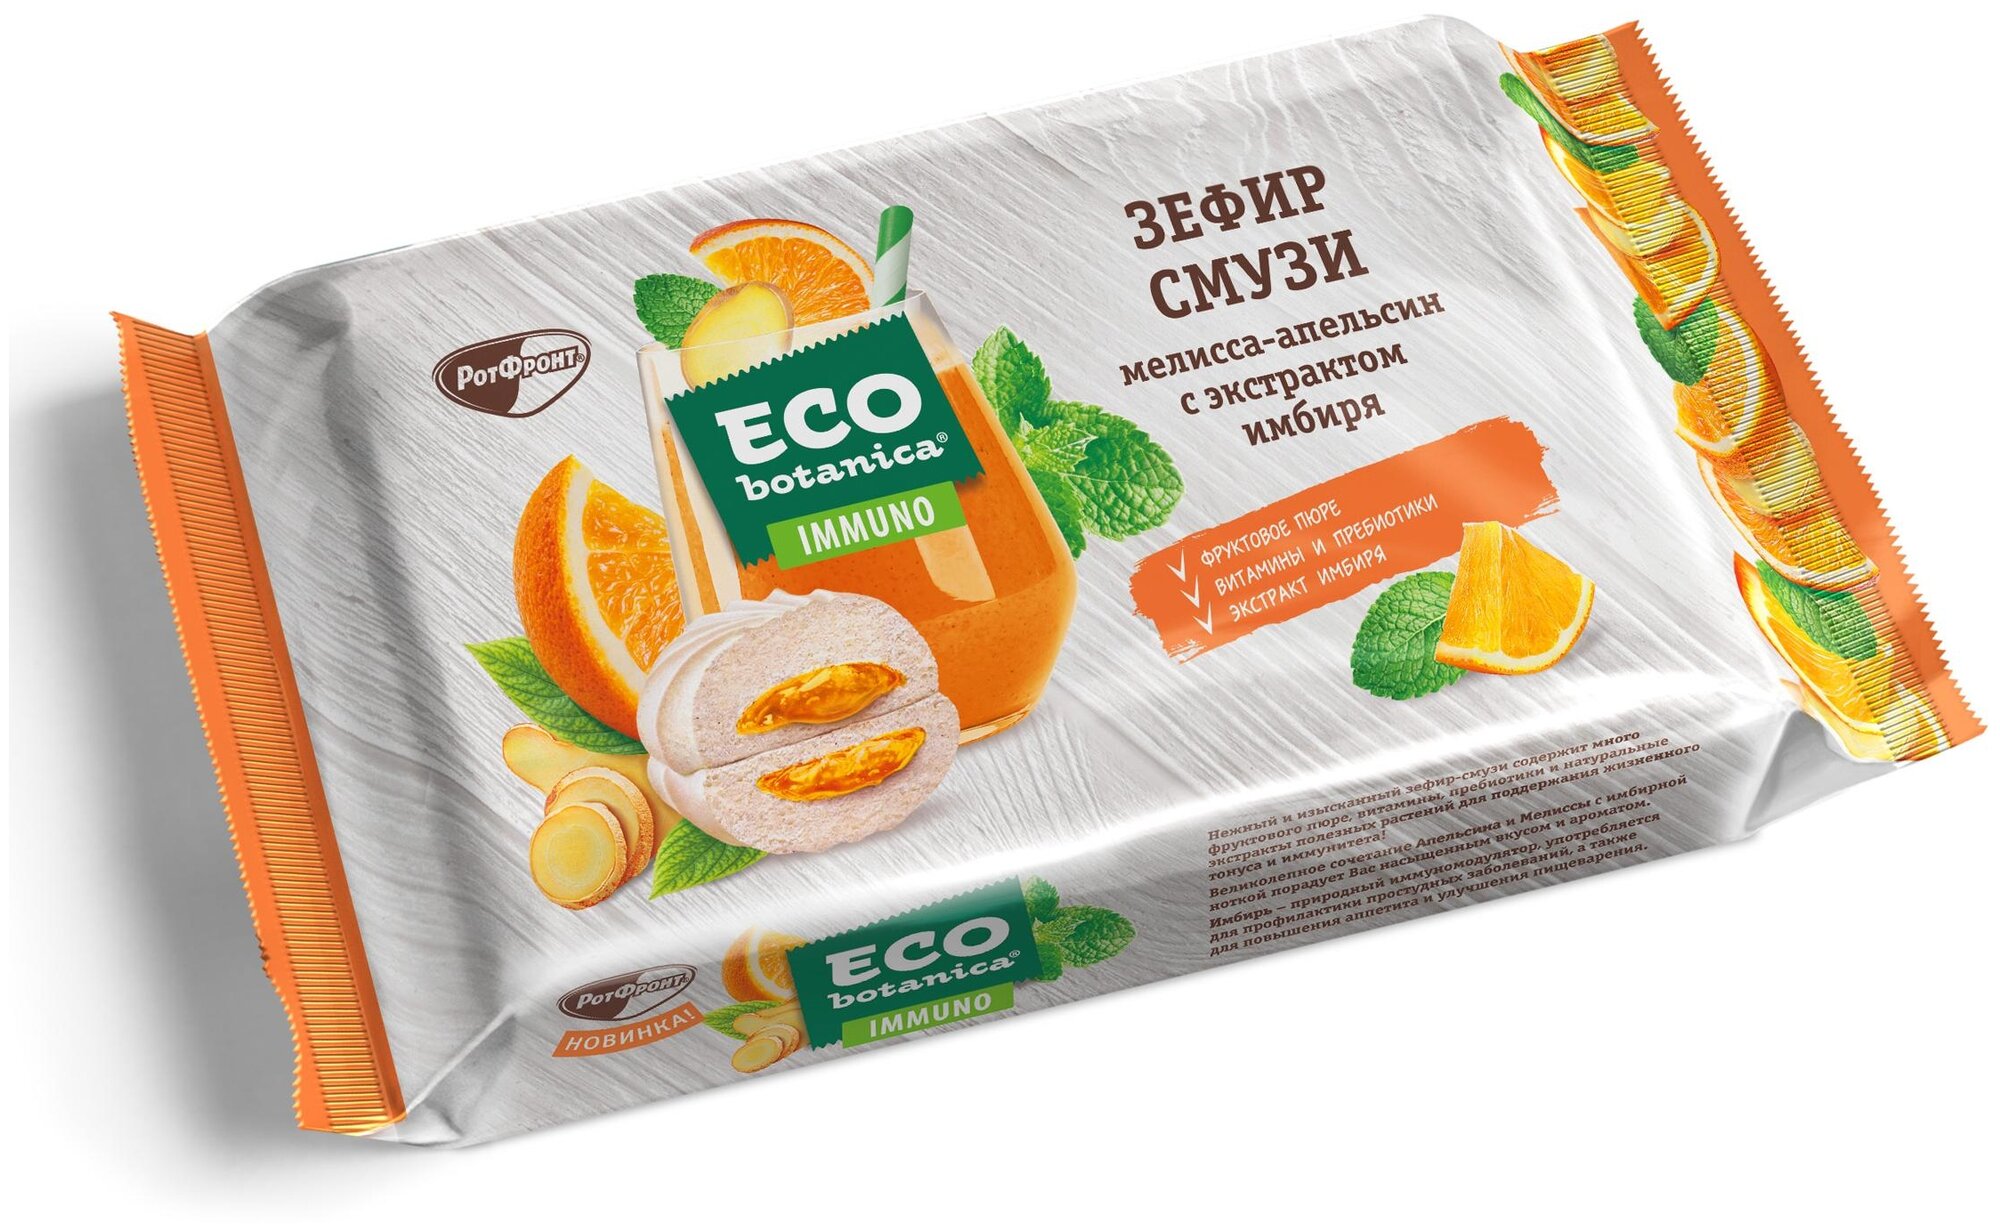 Зефир Eco botanica смузи мелисса-апельсин с экстрактом имбиря